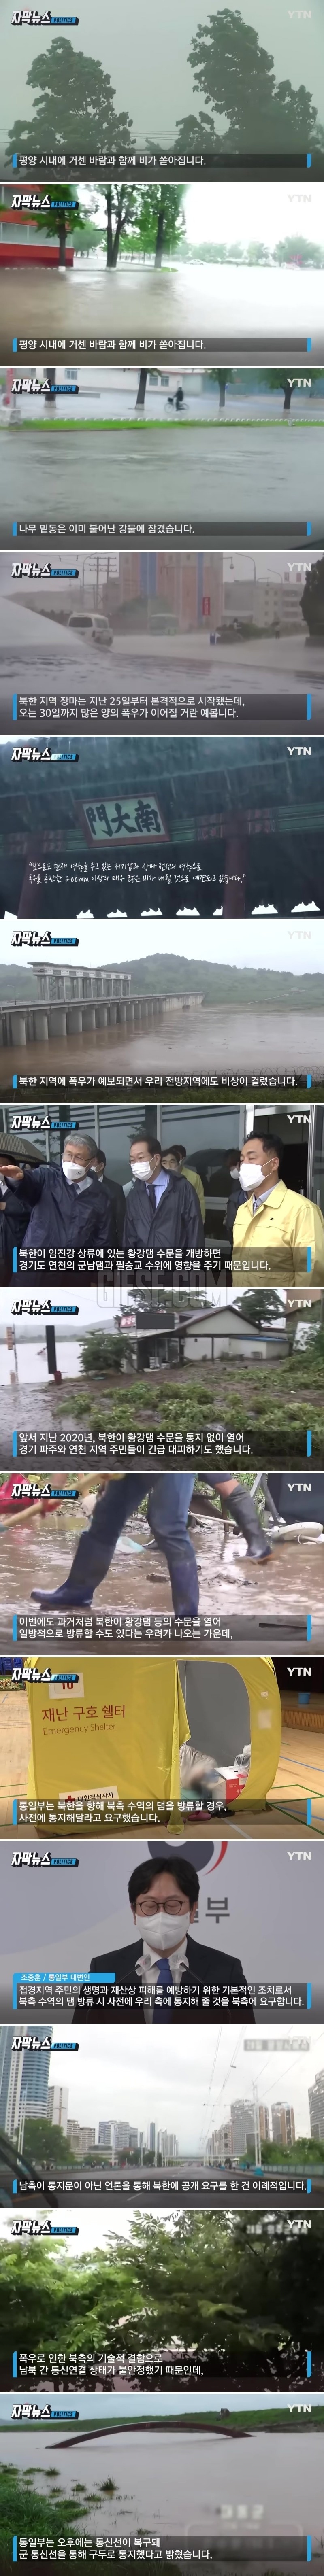 ',장마 시작', 북한 연일 폭우.전방지역도 비상.jpg